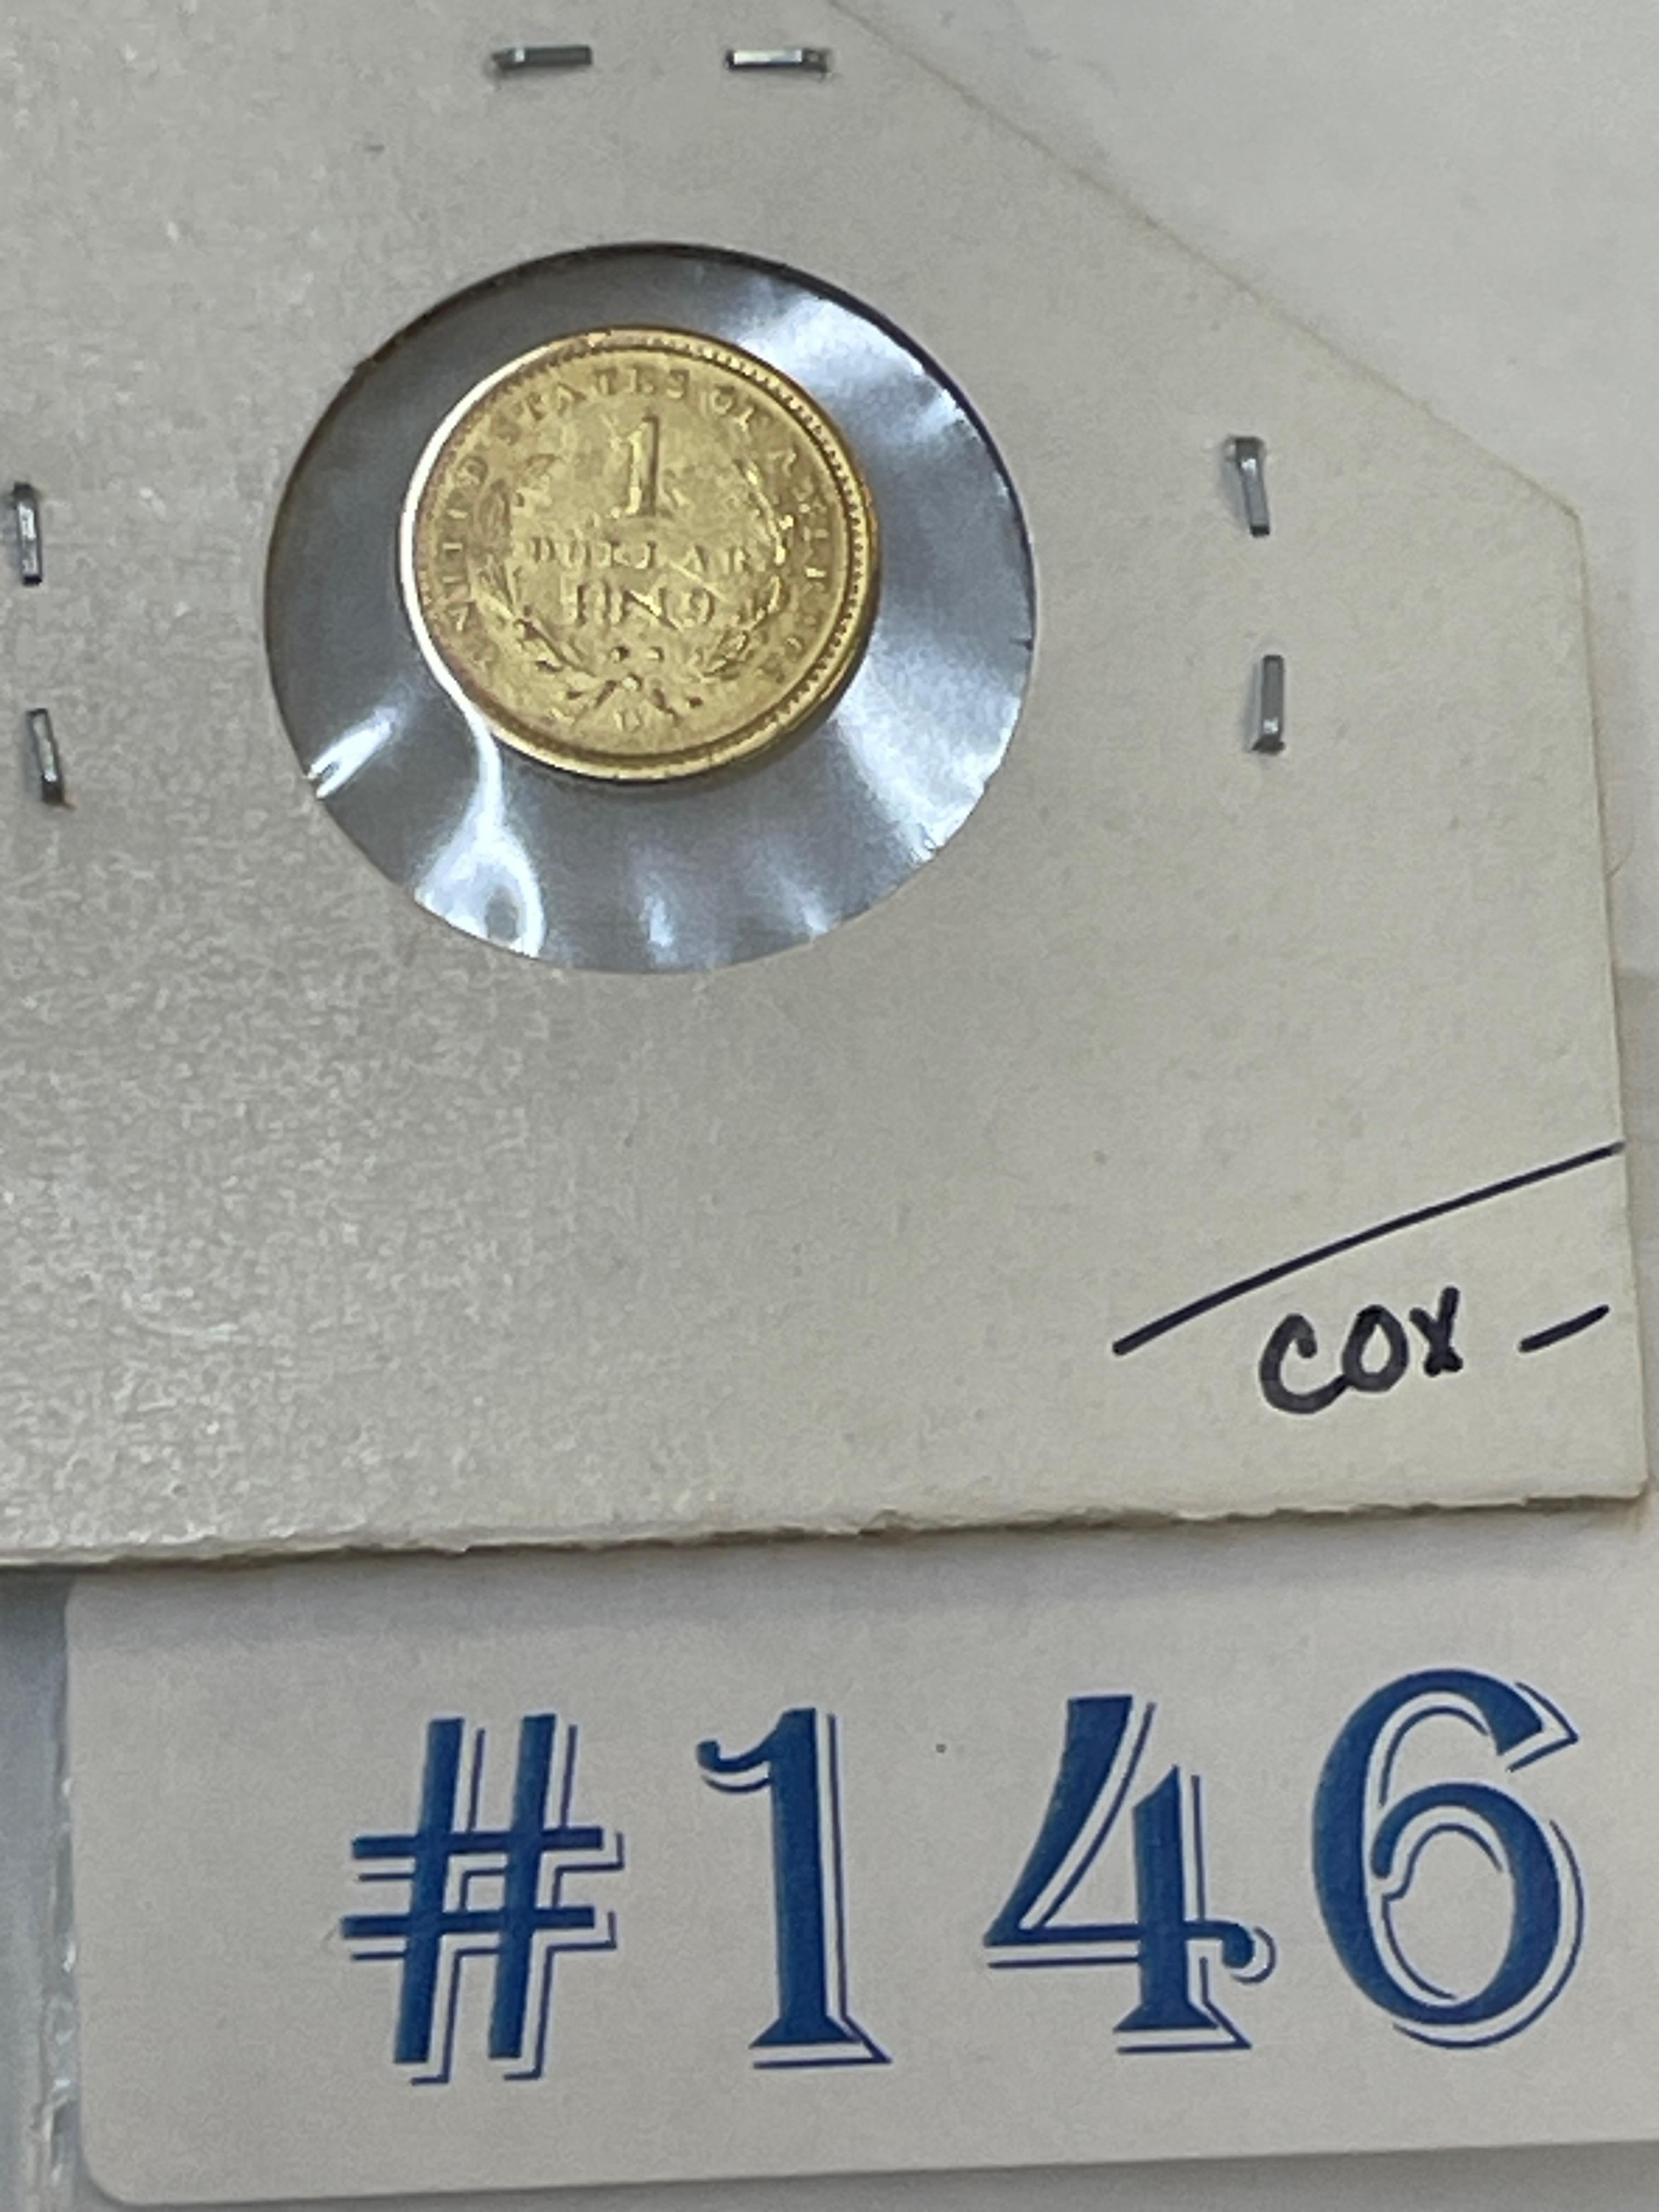 1849-O $1 GOLD COIN VF/EF